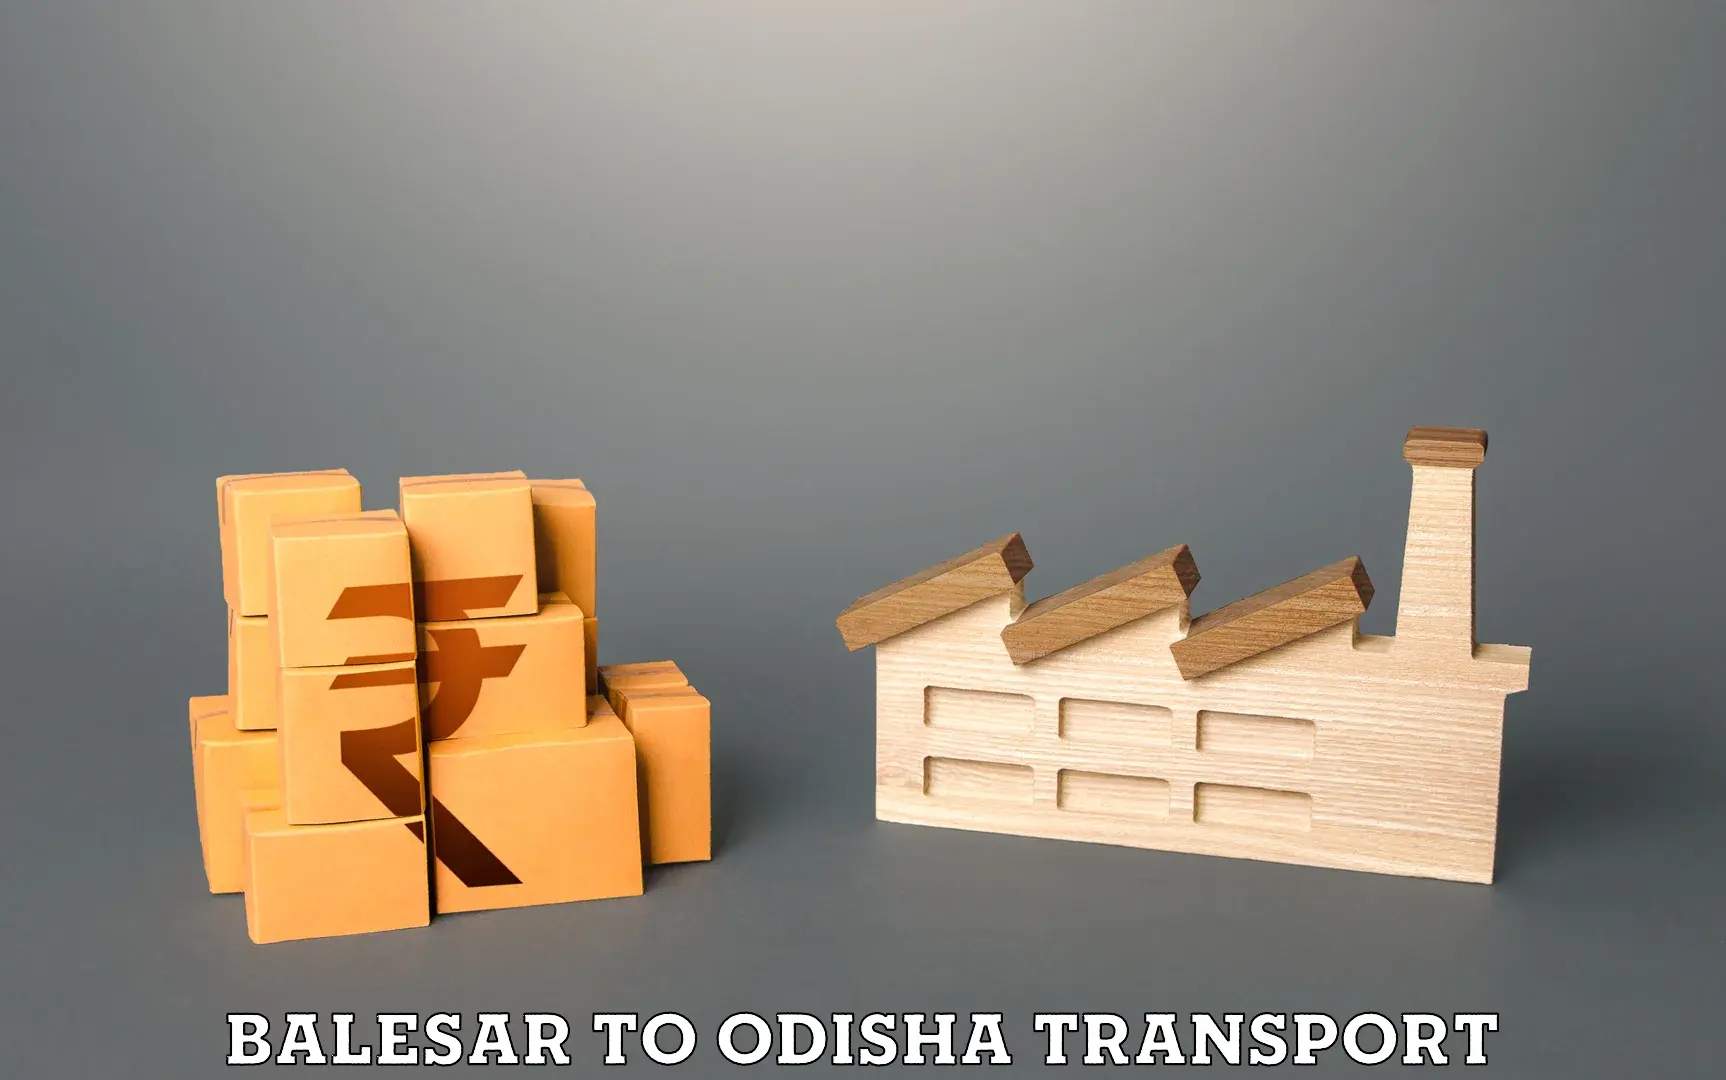 Daily transport service Balesar to Polasara